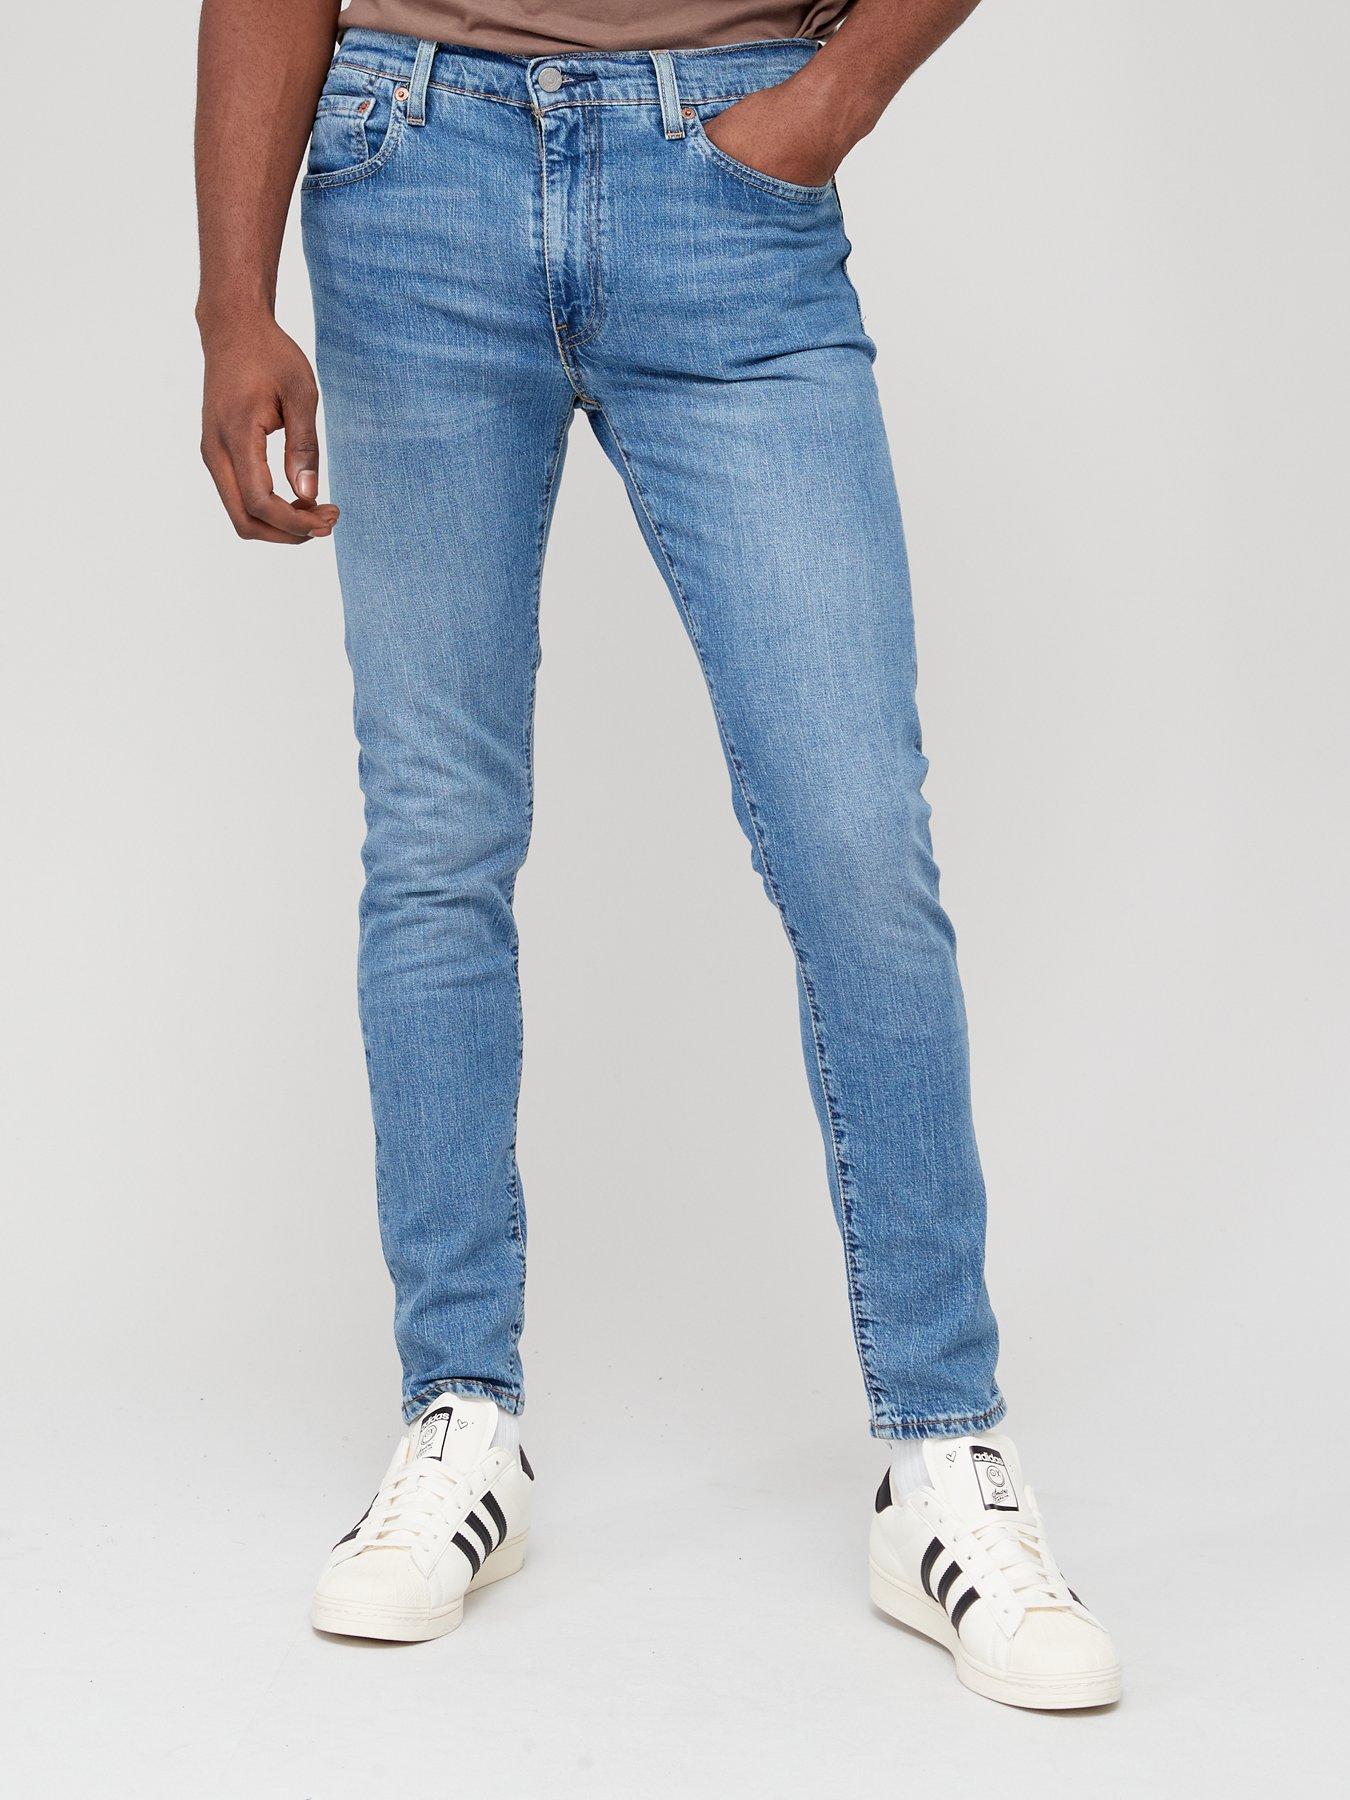 Levi's 512 Slim Taper Fit Jeans - Medium Indigo 